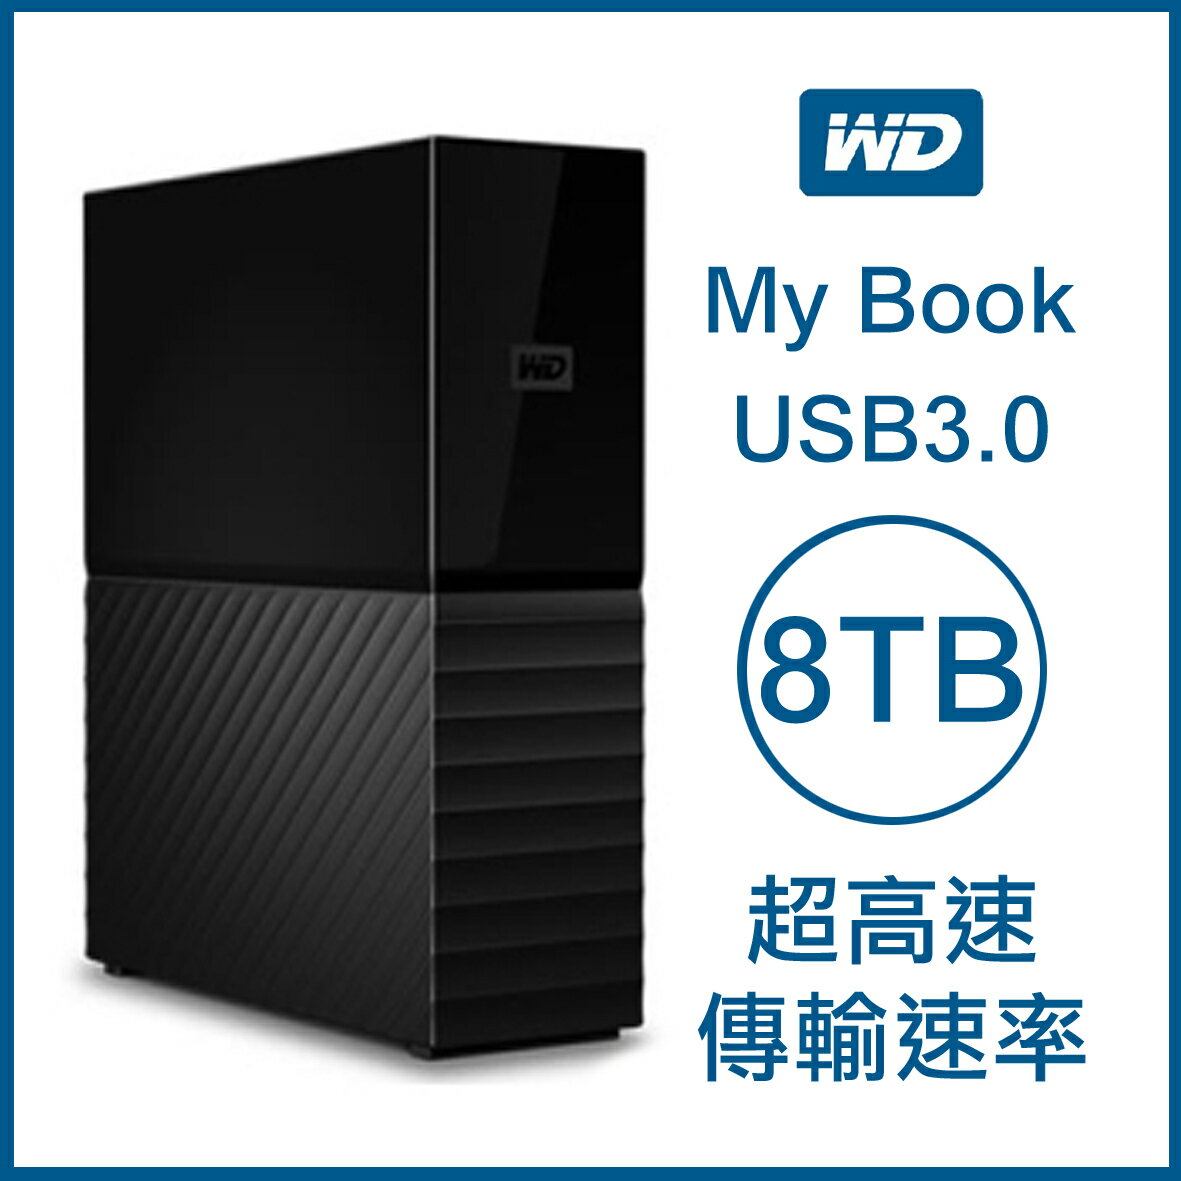 【9%點數】WD My Book 8TB 3.5吋外接硬碟 USB3.0 超高速傳輸速率 原廠公司貨 原廠保固 威騰 8T【APP下單9%點數回饋】【限定樂天APP下單】